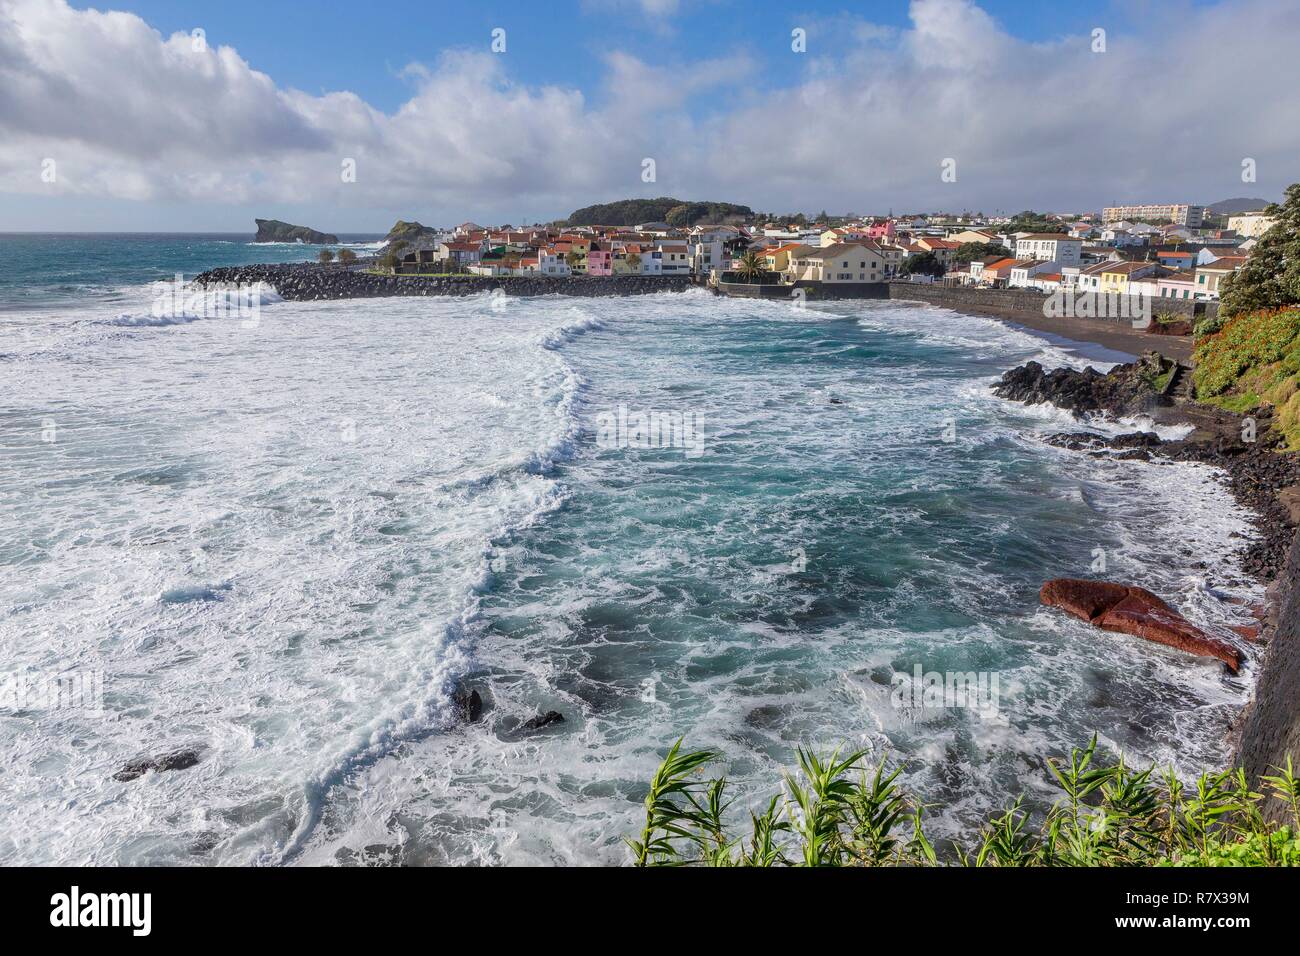 Portugal, Azores Archipelago, Sao Miguel Island, Sao Roque Stock Photo